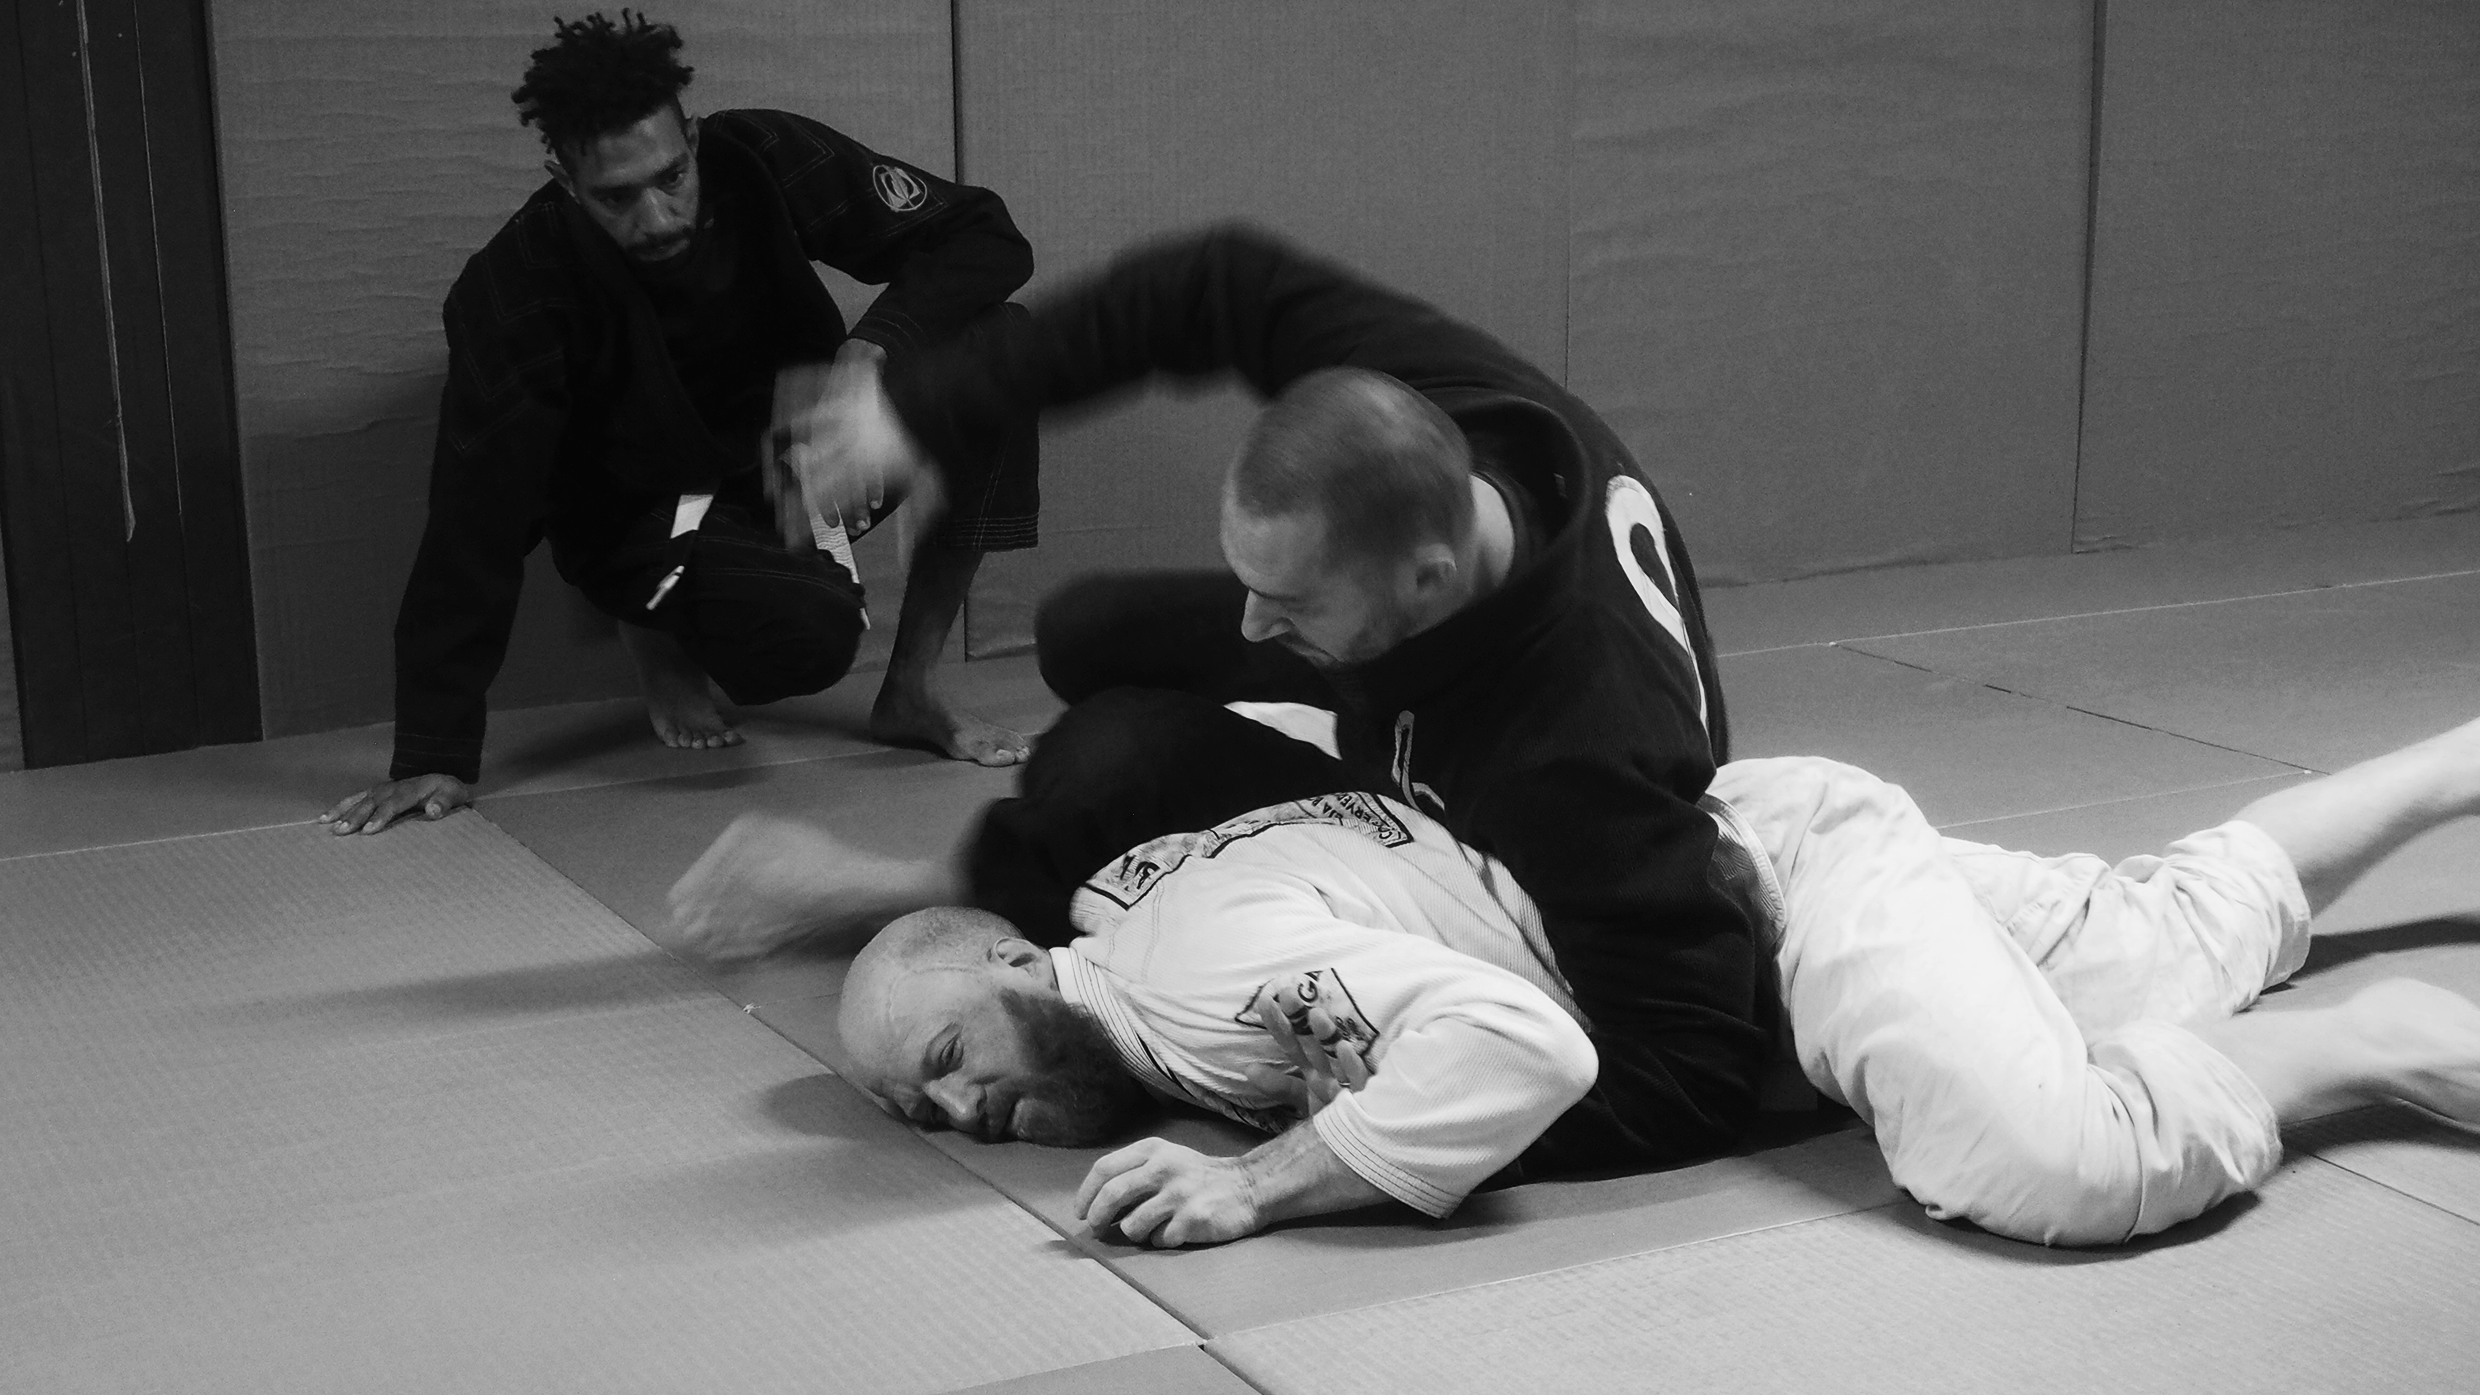 cours de jiu jitsu brésilien et de self defense au sol sur Toulouse avec Olivier Ancely ceinture noire de JJB de chez Gracie Barra